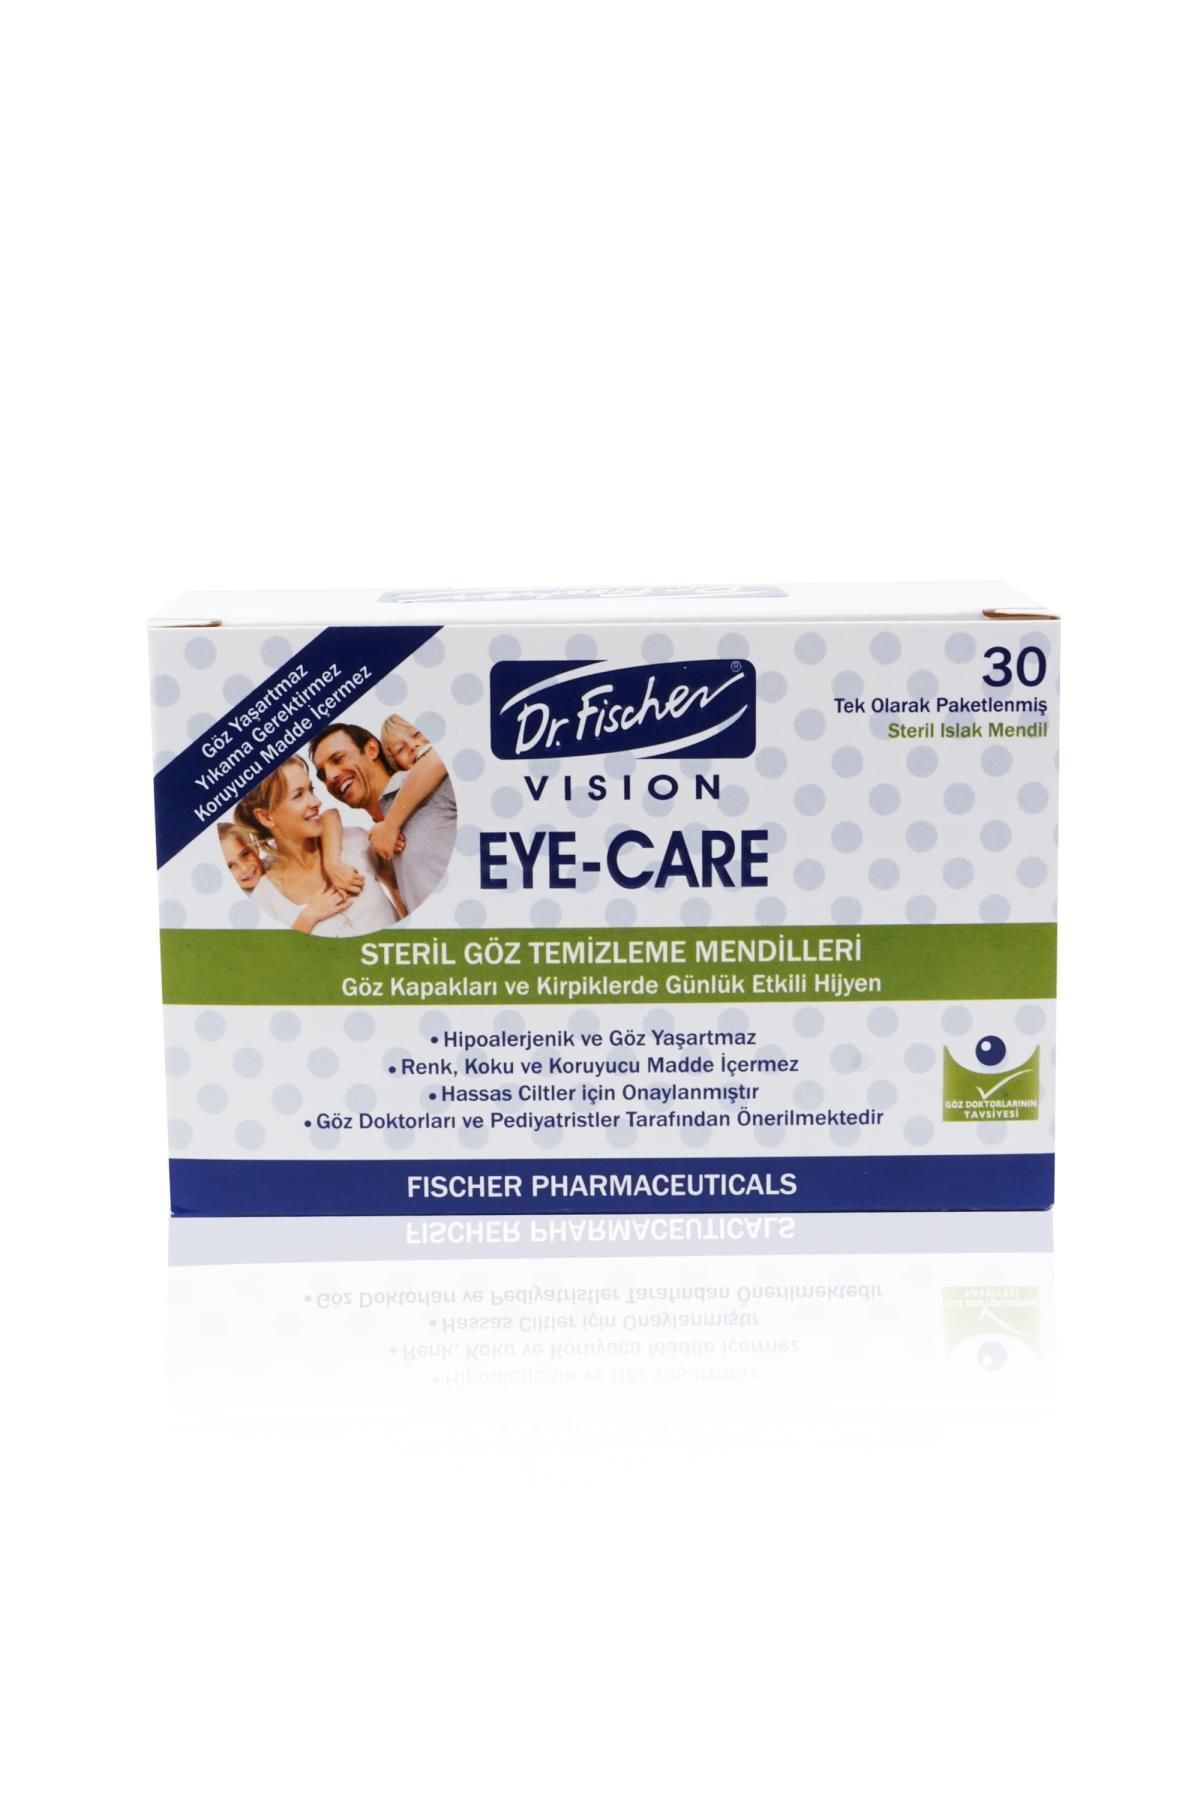 Dr Fischer Dr.fischer Eyecare Yetişkin Steril Göz Temizleme Mendili - 30'lu Paket MDZN.72